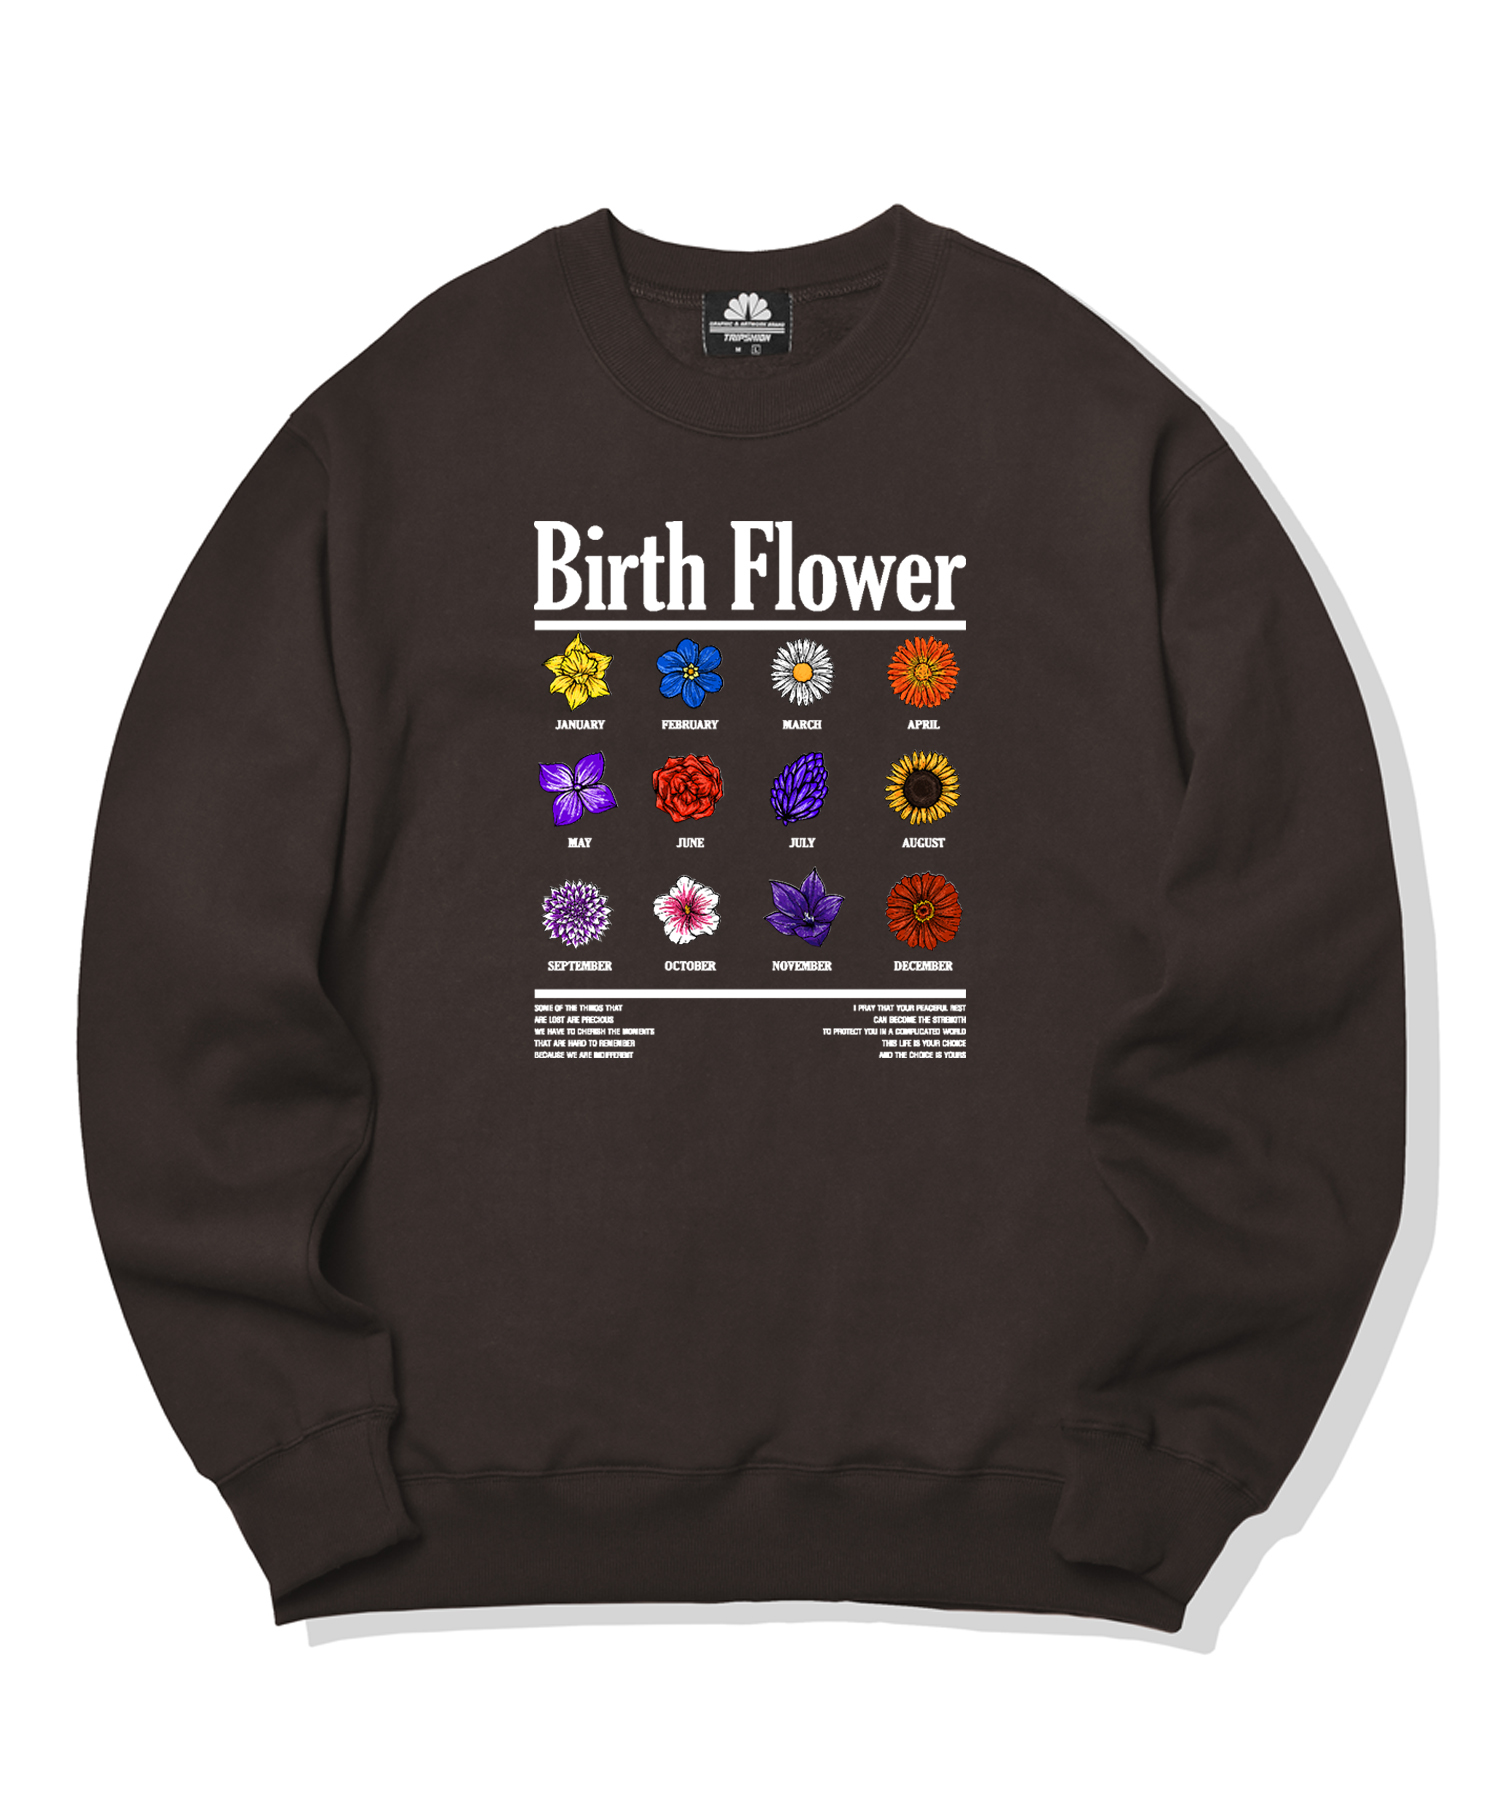 BIRTH FLOWER GRAPHIC CREWNECK - BROWN